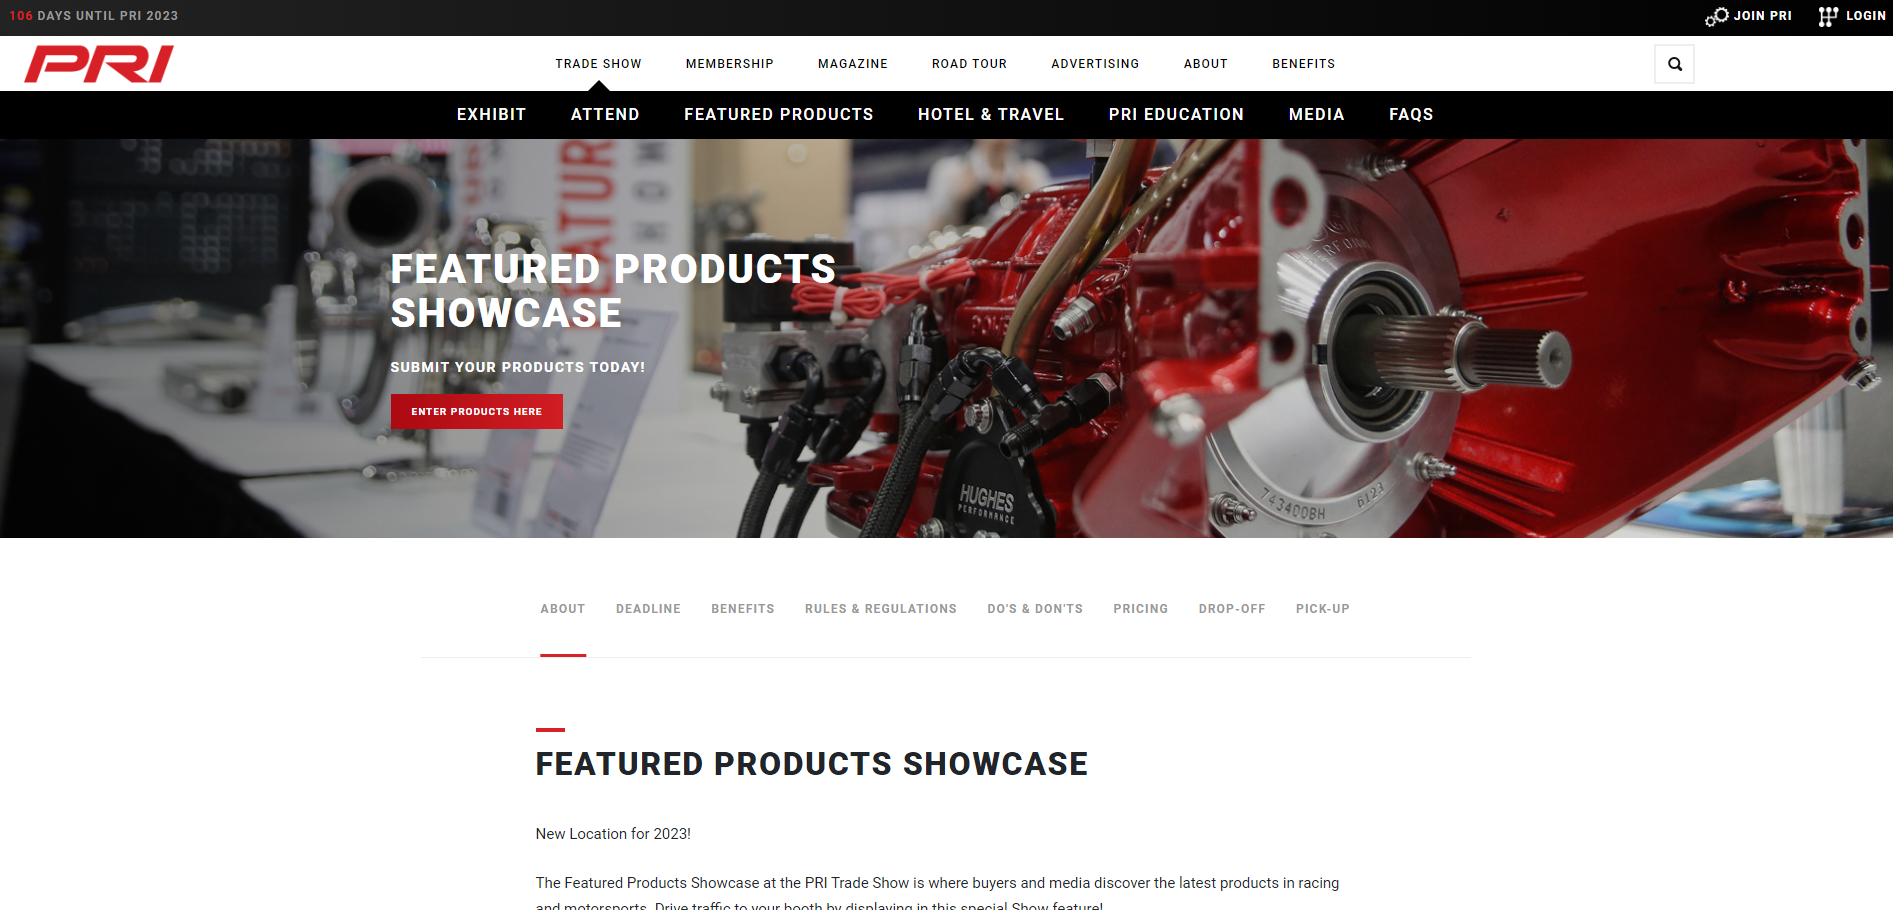 PRI Trade Show Product Showcase